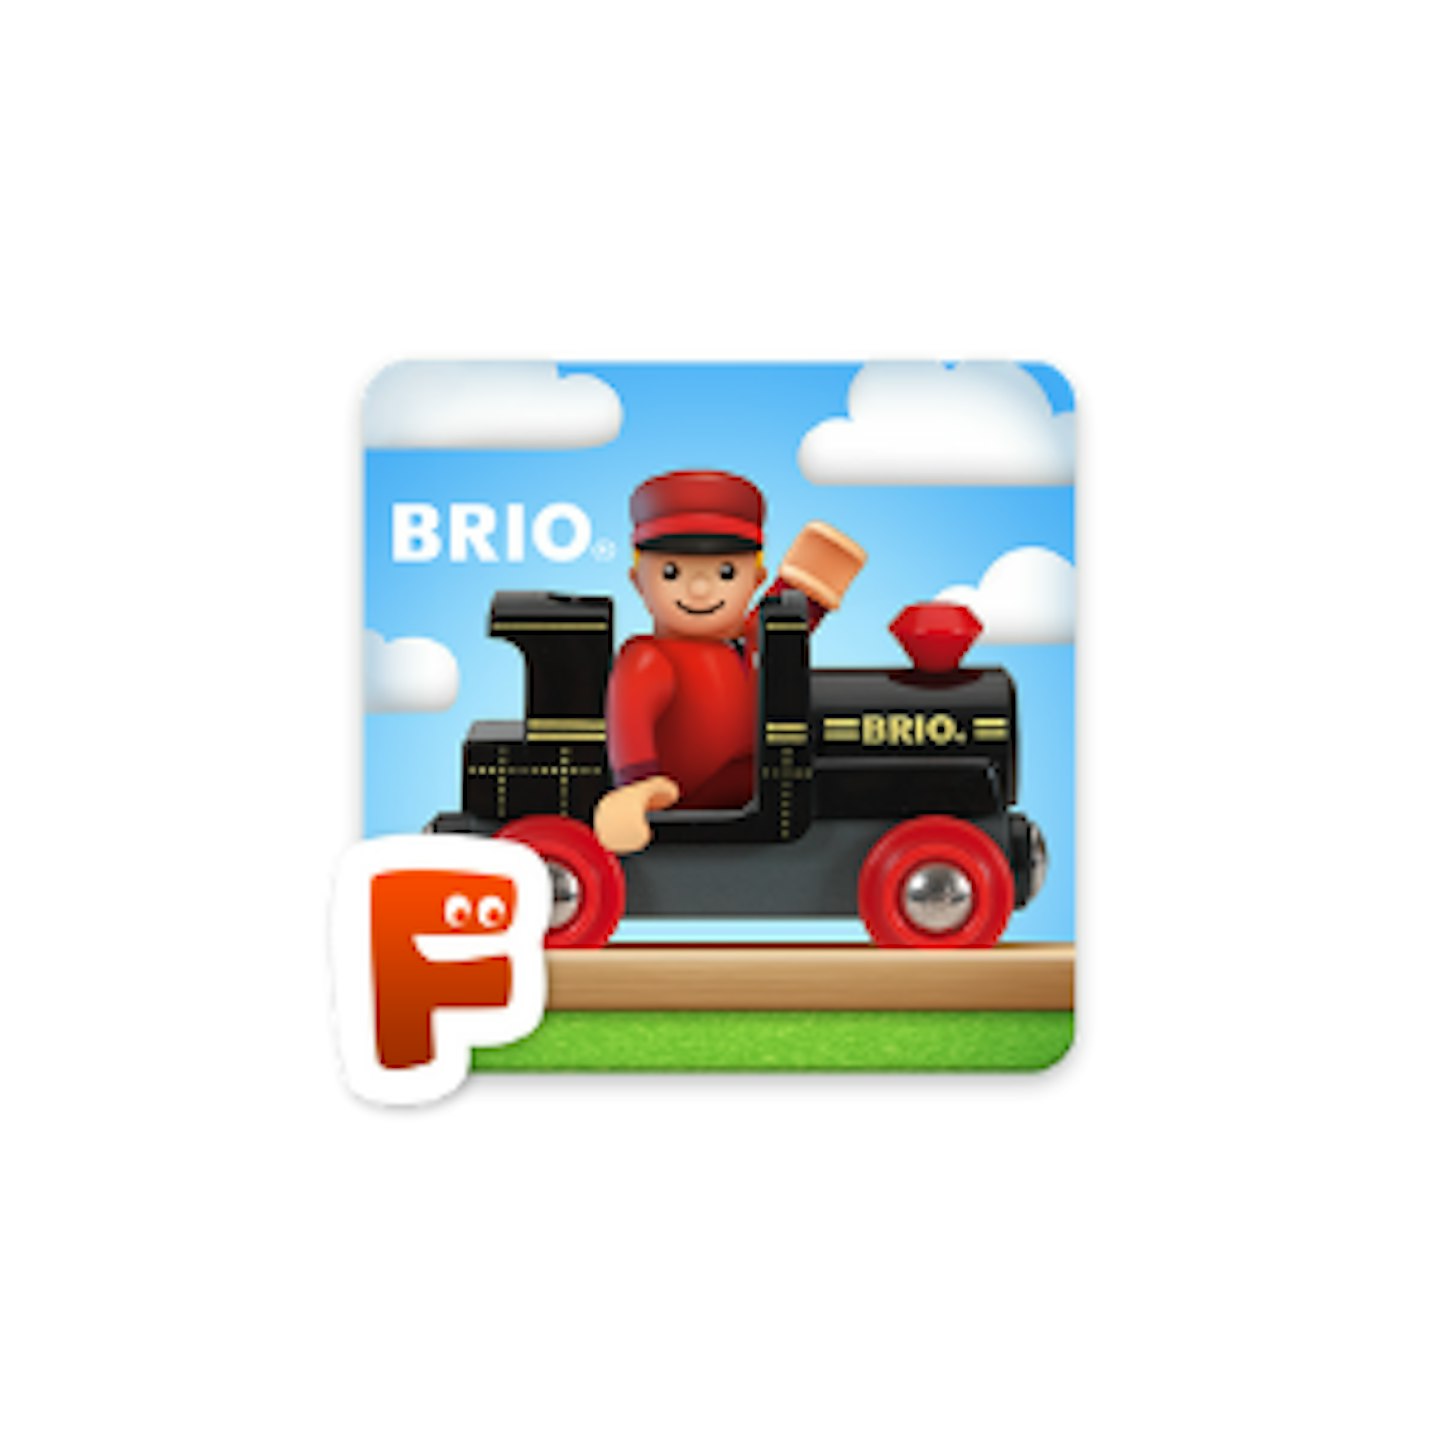 BRIO World - Railway by  Filimundus AB